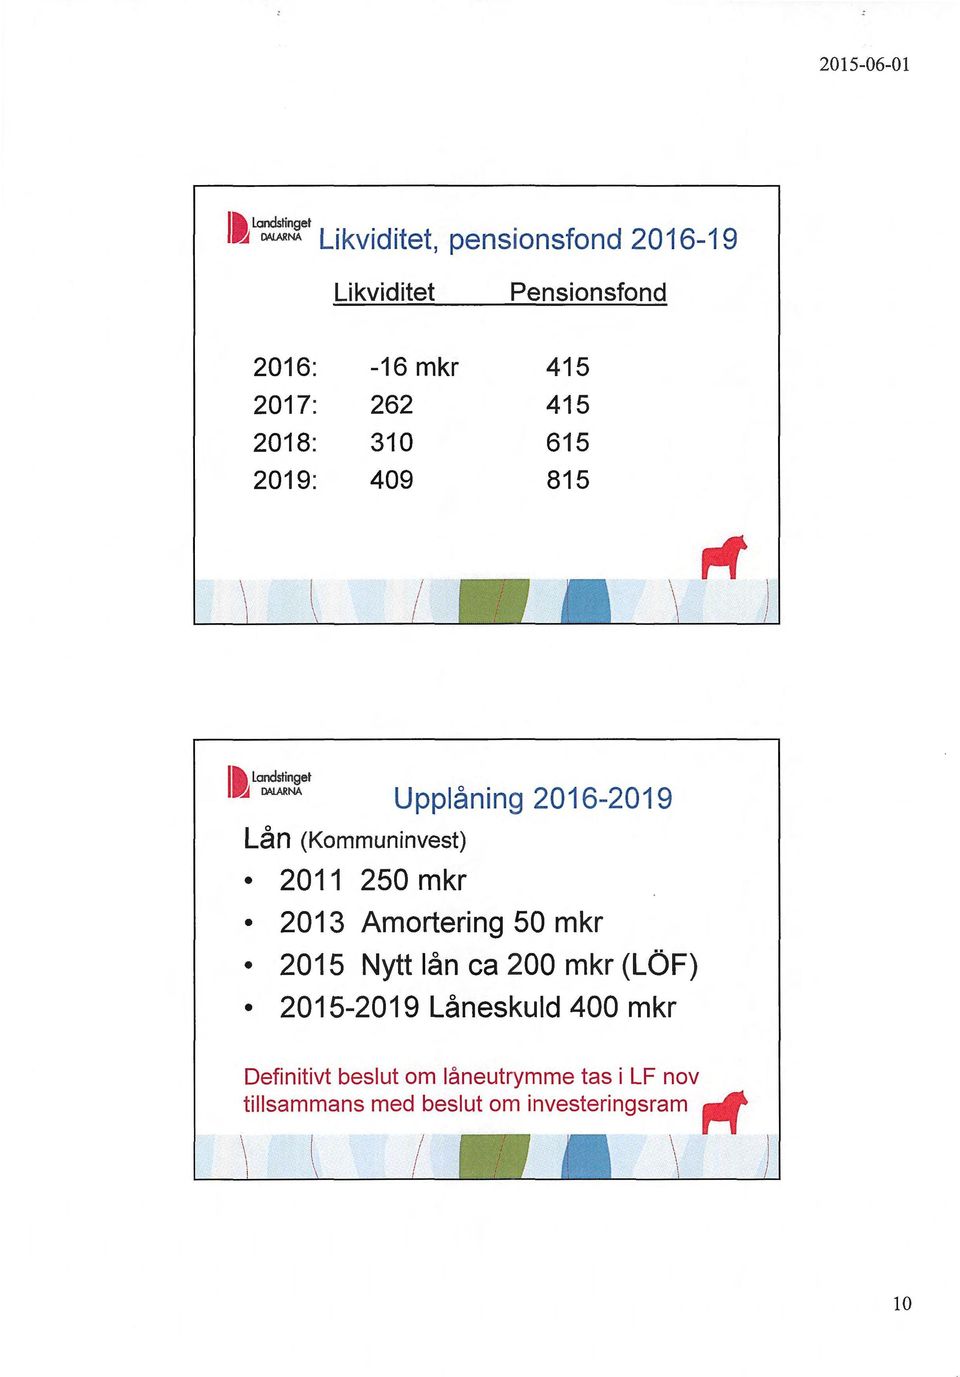 Upplåning 2016-2019 2013 Amortering 50 mkr 2015 Nytt lån ca 200 mkr (LÖF) 2015-2019 Låneskuld